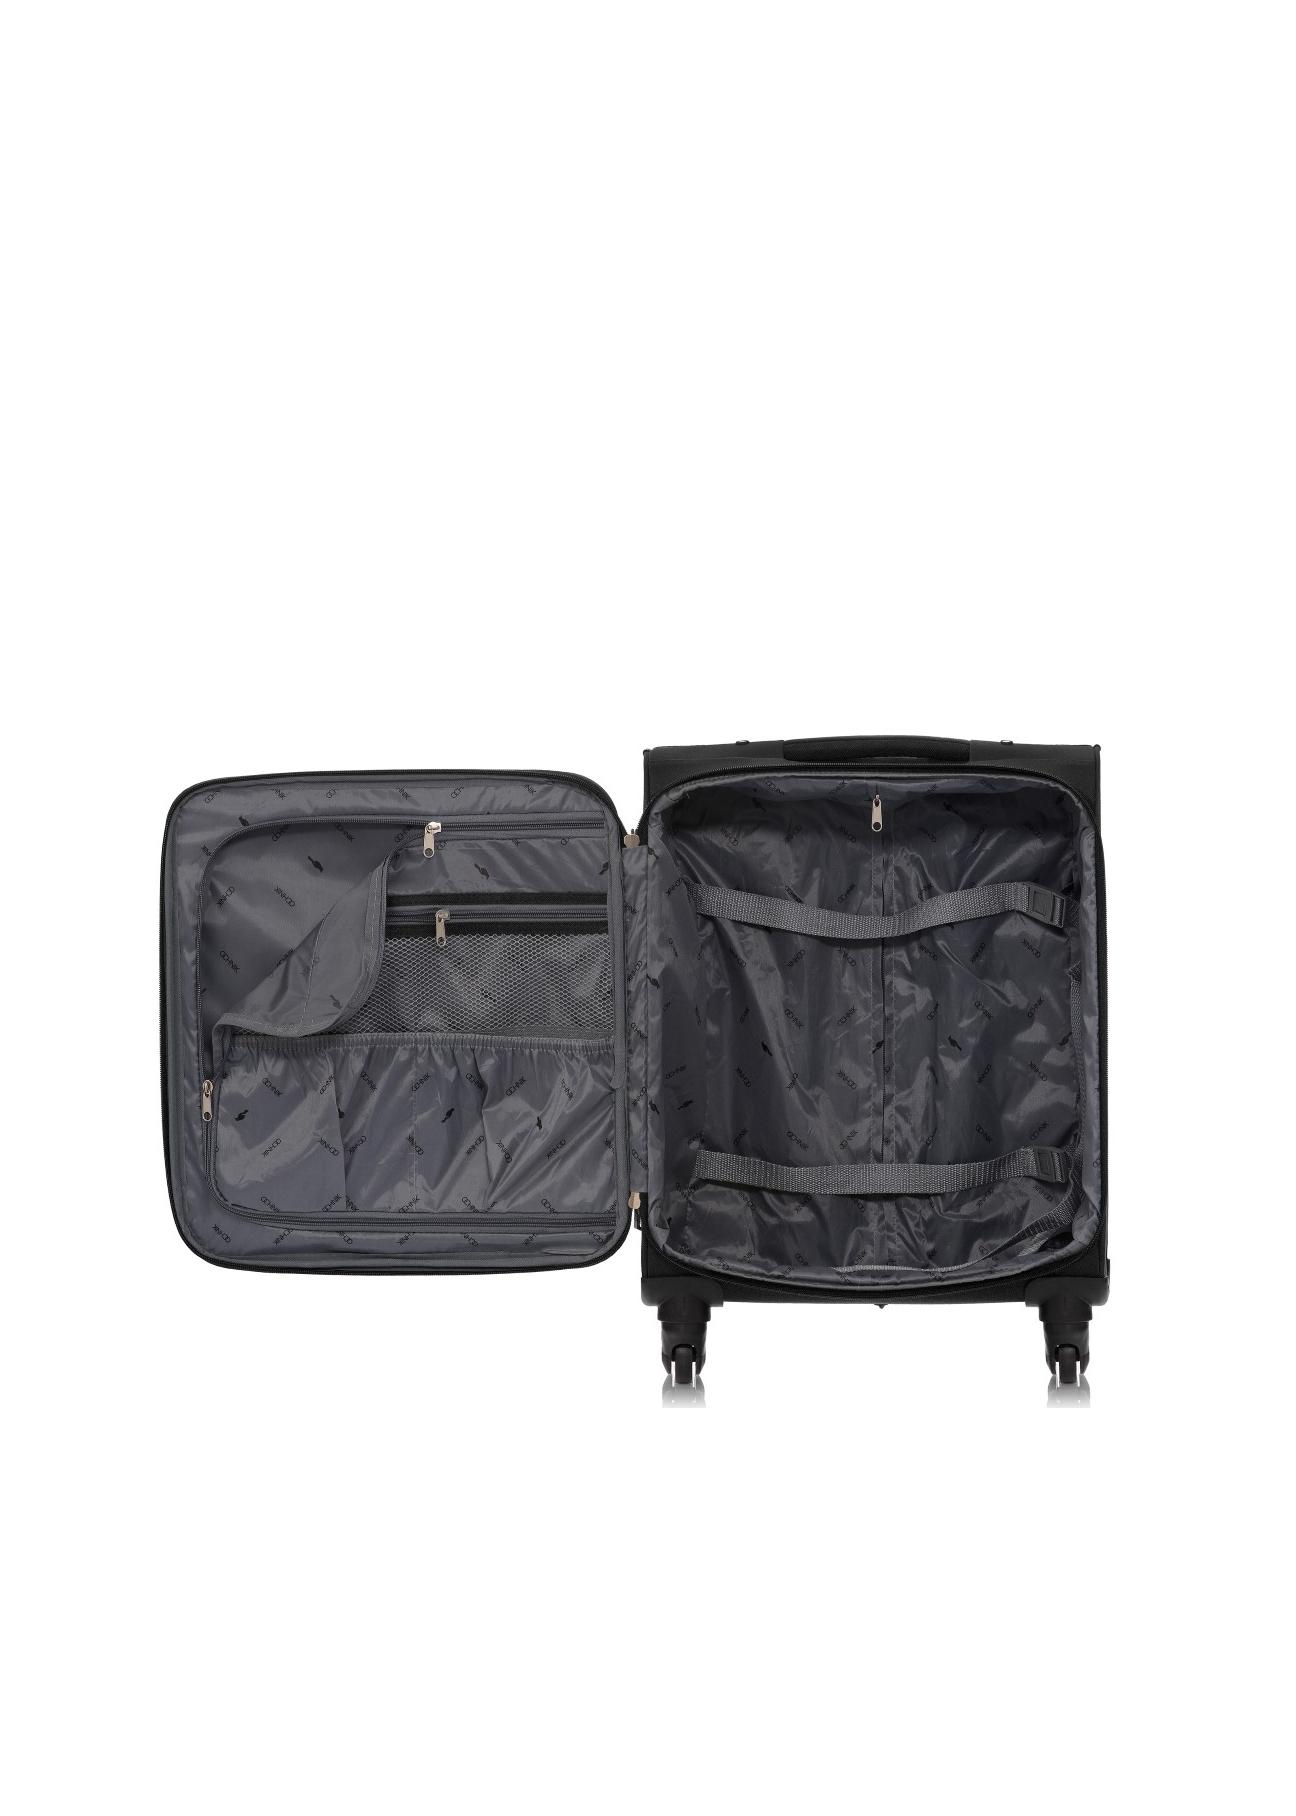 Mała walizka na kółkach WALNY-0017-99-18